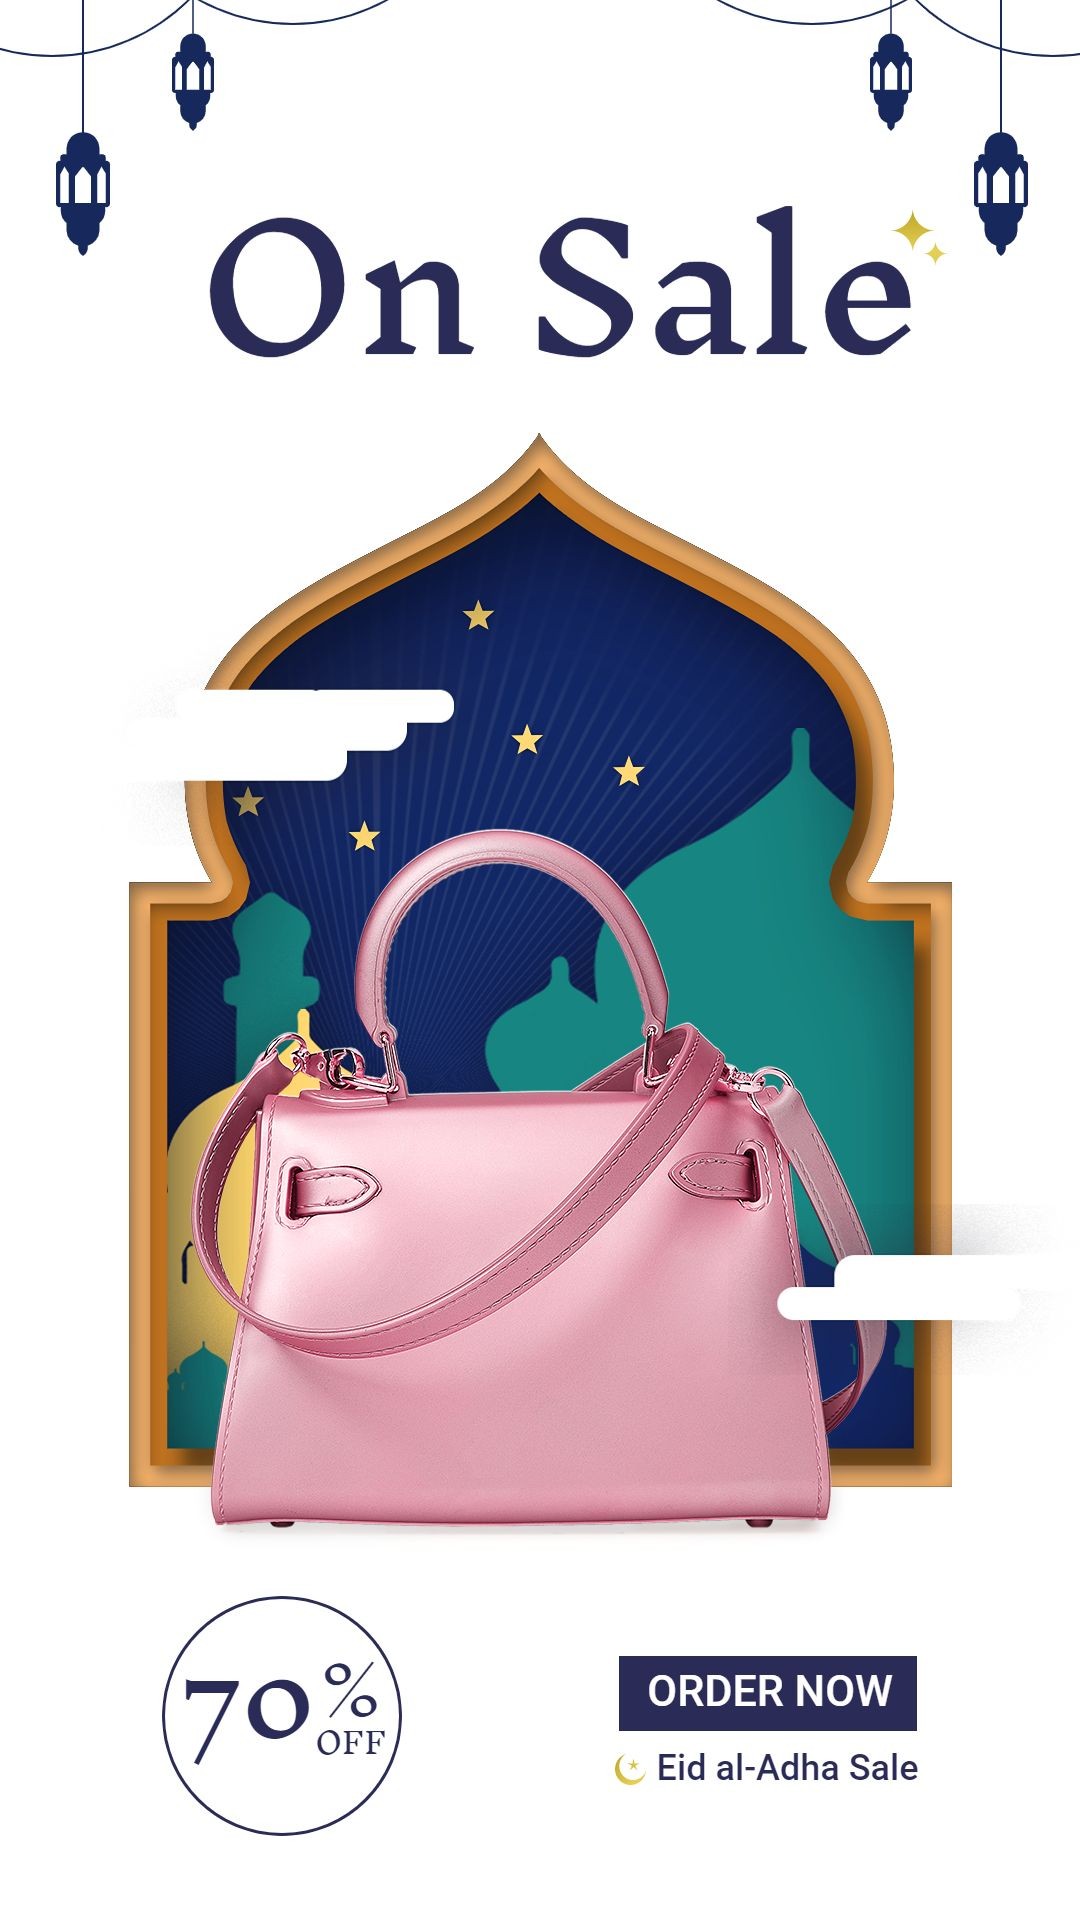 Eid al-Adha Women's Bag Purse Fashion Discount Promotion Sale Ecommerce Story预览效果